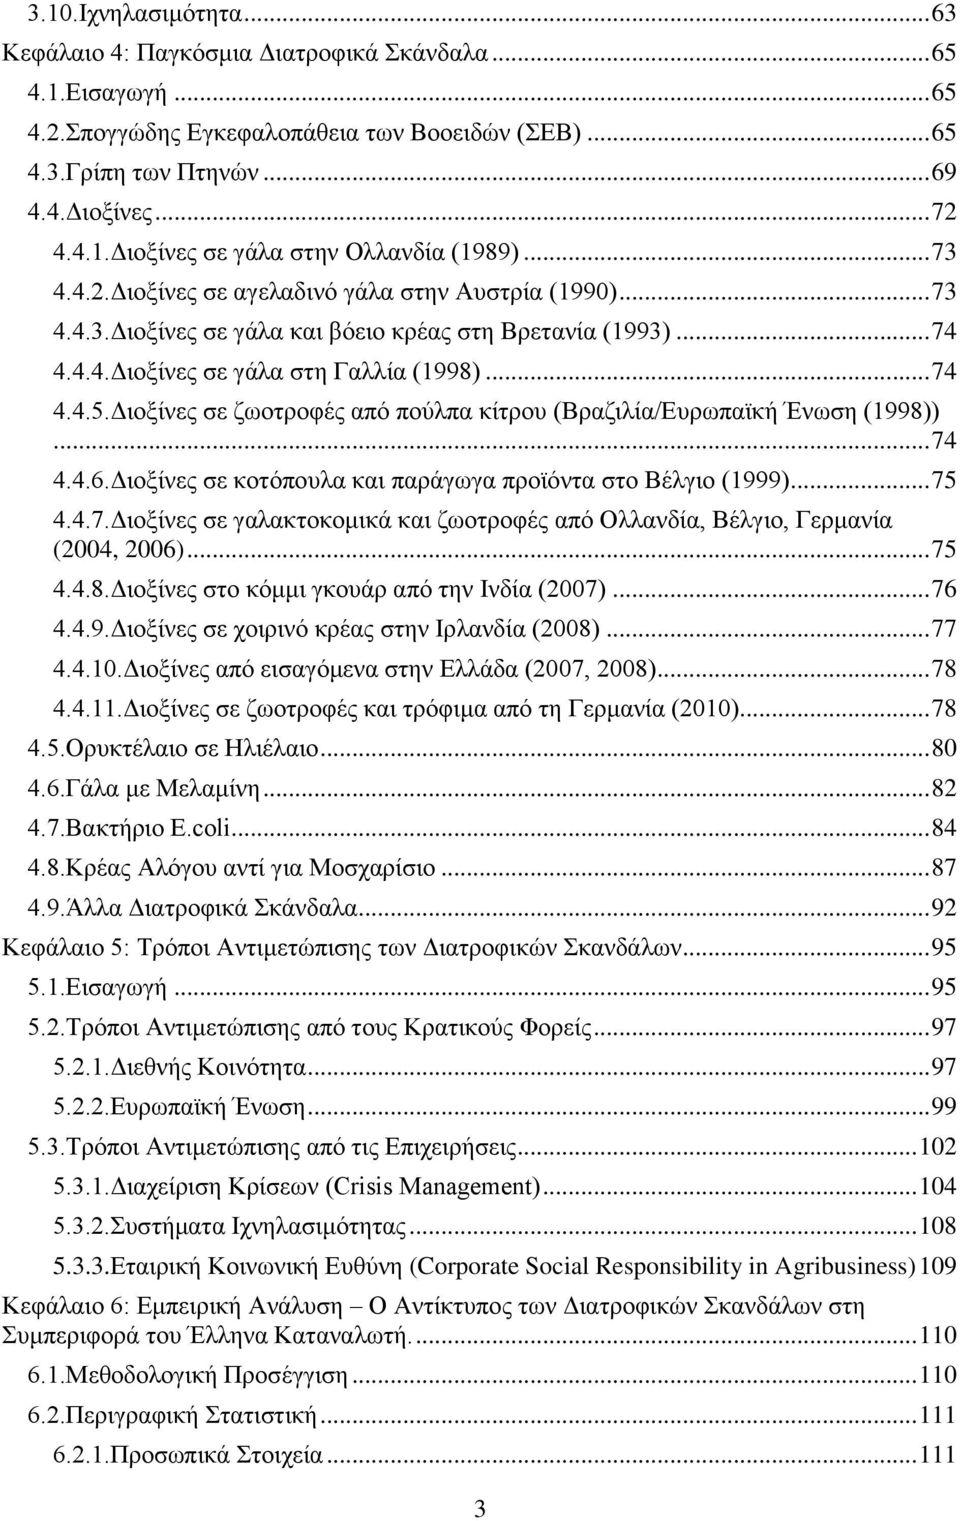 Διοξίνες σε ζωοτροφές από πούλπα κίτρου (Βραζιλία/Ευρωπαϊκή Ένωση (1998))... 74 4.4.6.Διοξίνες σε κοτόπουλα και παράγωγα προϊόντα στο Βέλγιο (1999)... 75 4.4.7.Διοξίνες σε γαλακτοκομικά και ζωοτροφές από Ολλανδία, Βέλγιο, Γερμανία (2004, 2006).